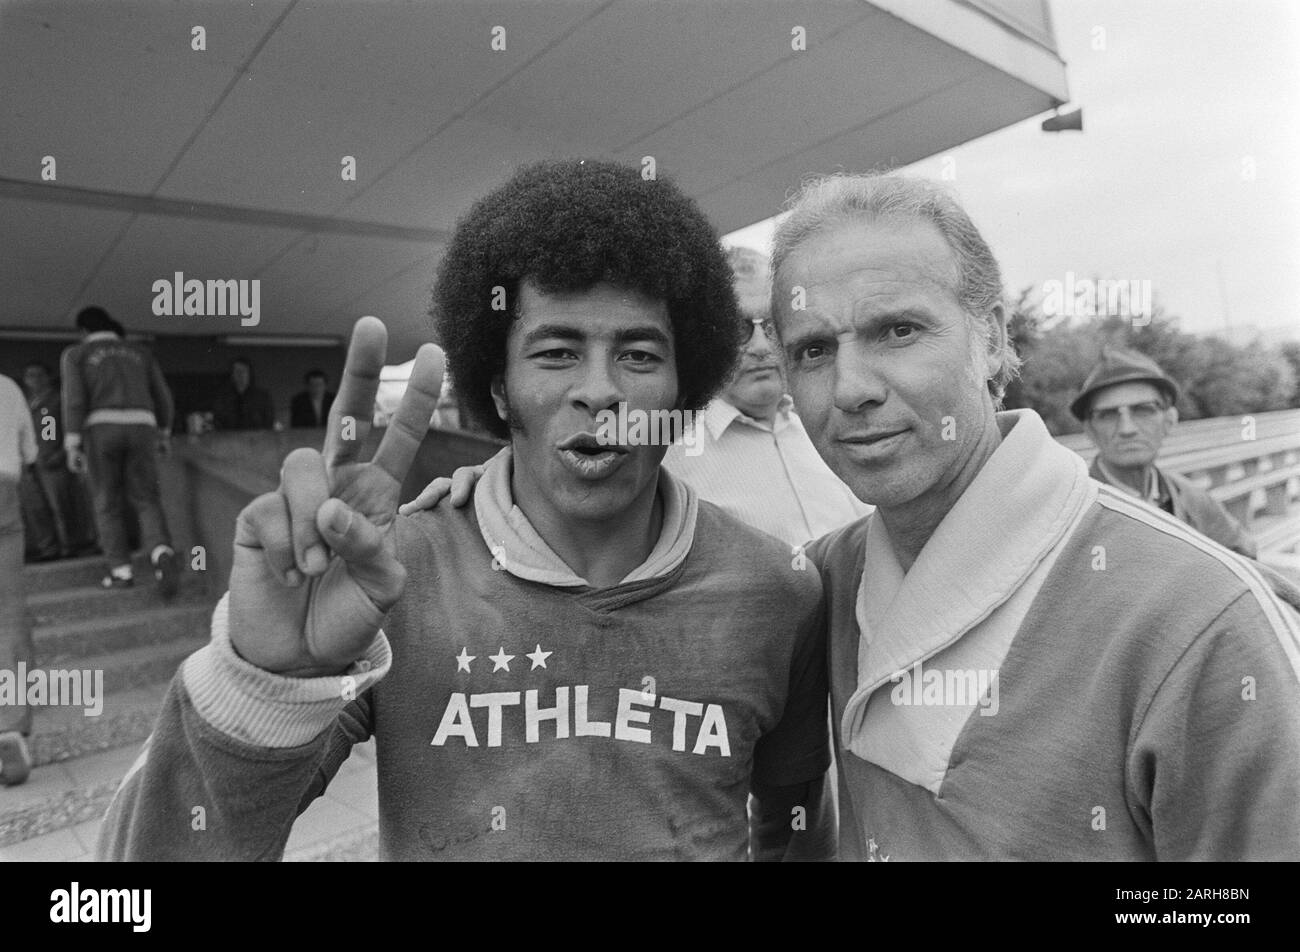 Weltmeisterschaft 74, Training Brasilien; Trainer Zagalo (r) und Jairzinko Datum: 1. Juli 1974 Schlagwörter: Sport, Trainer, Fußball, Weltmeisterschaften Stockfoto